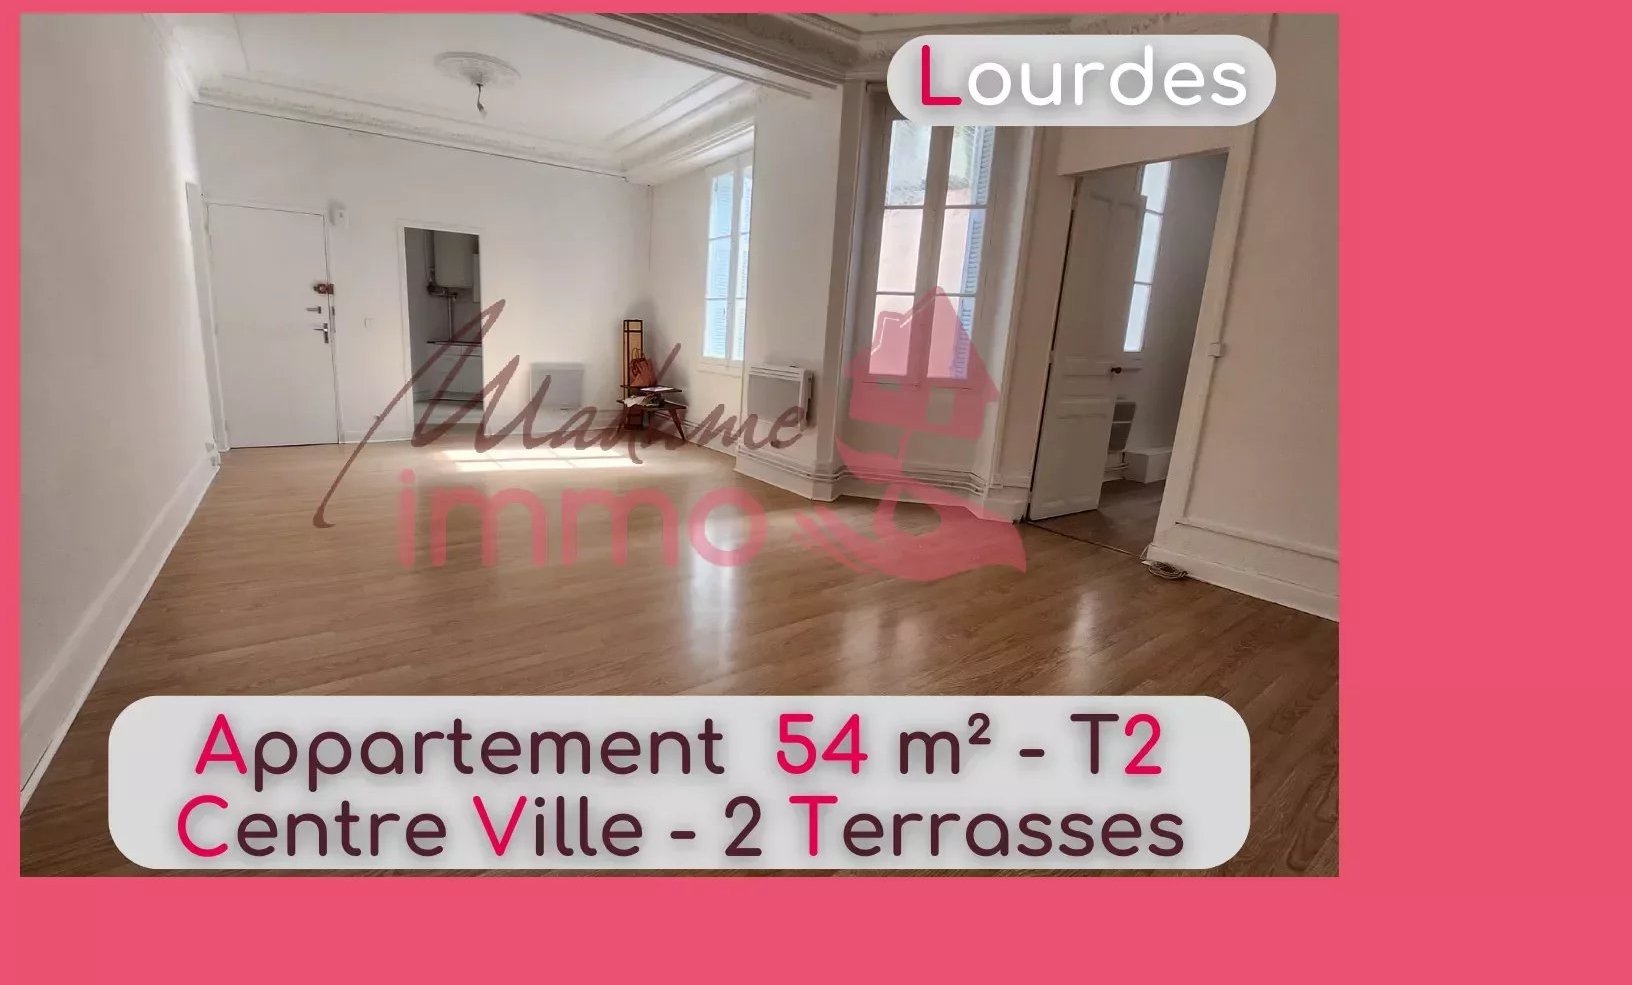 Appartement 2 pièces 54 m² Lourdes